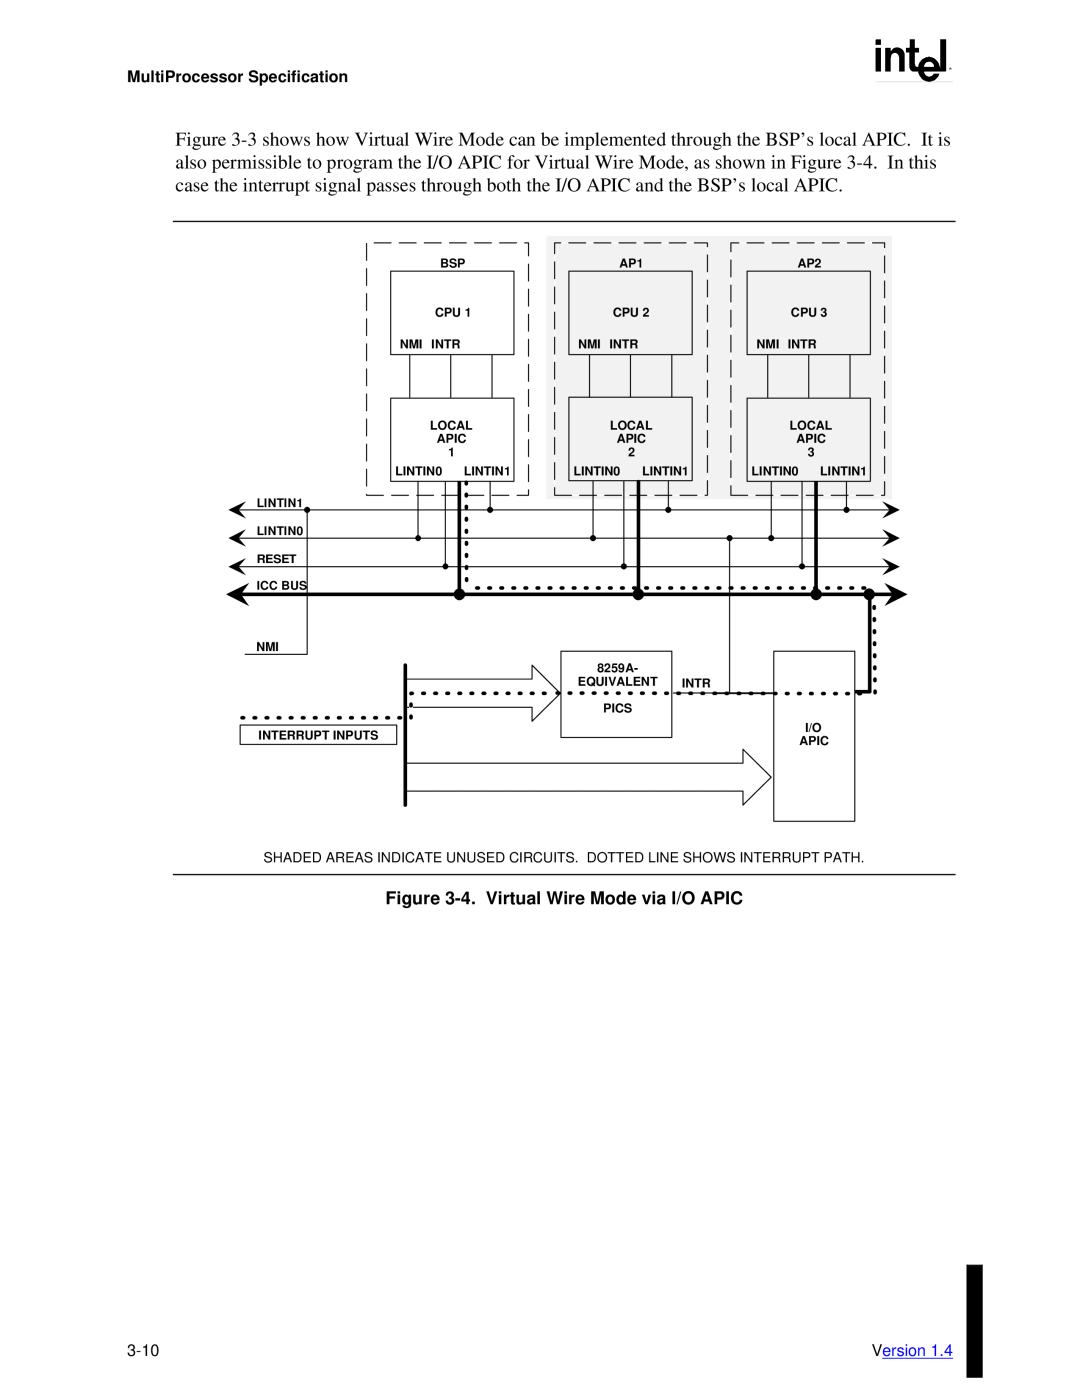 Intel MultiProcessor manual 4.Virtual Wire Mode via I/O APIC, 3-10 